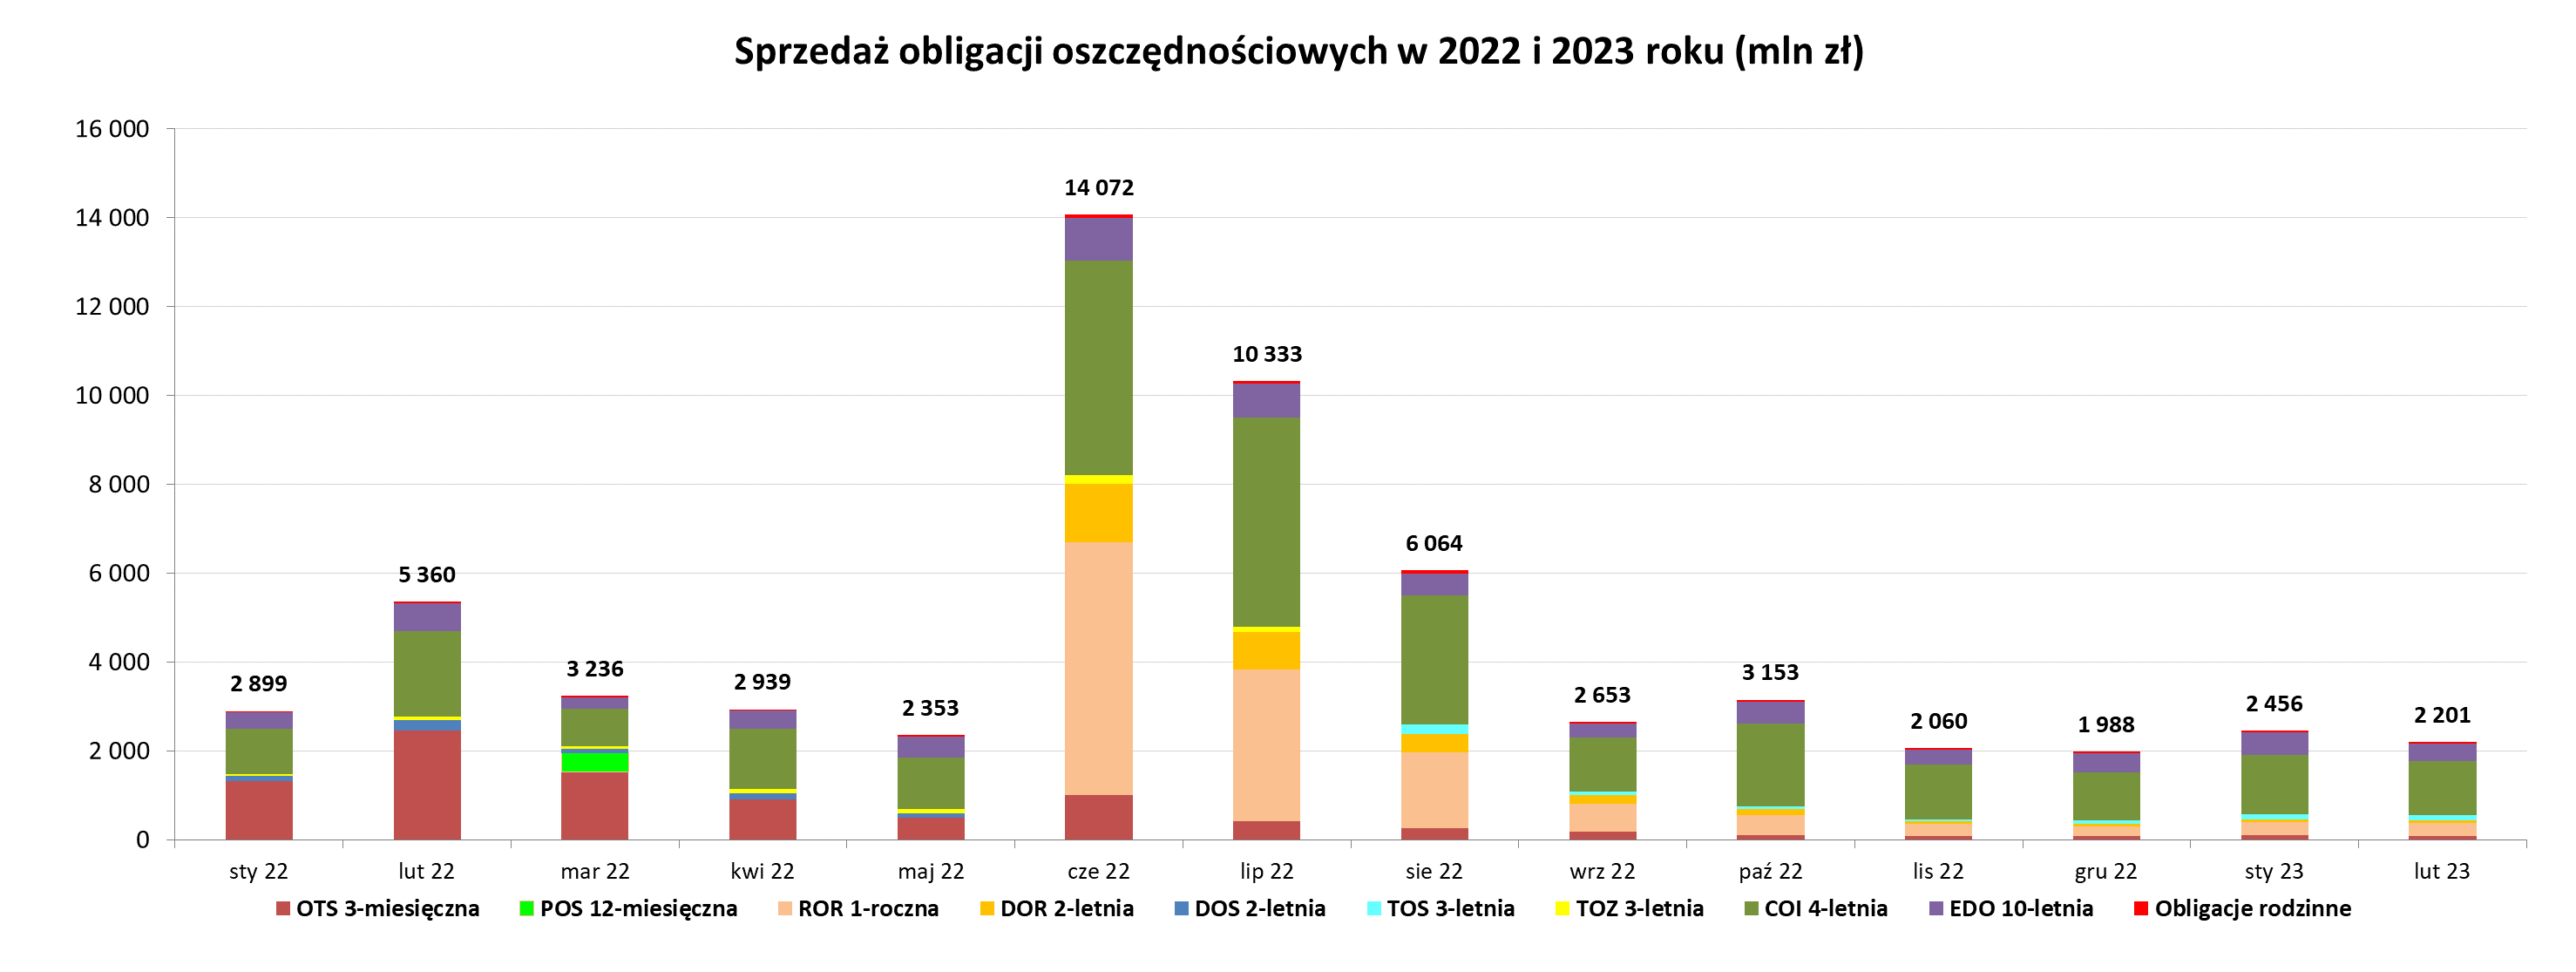 Wykres słupkowy przedstawiający sprzedaż obligacji oszczędnościowych w 2022 i 2023 roku (mln) luty